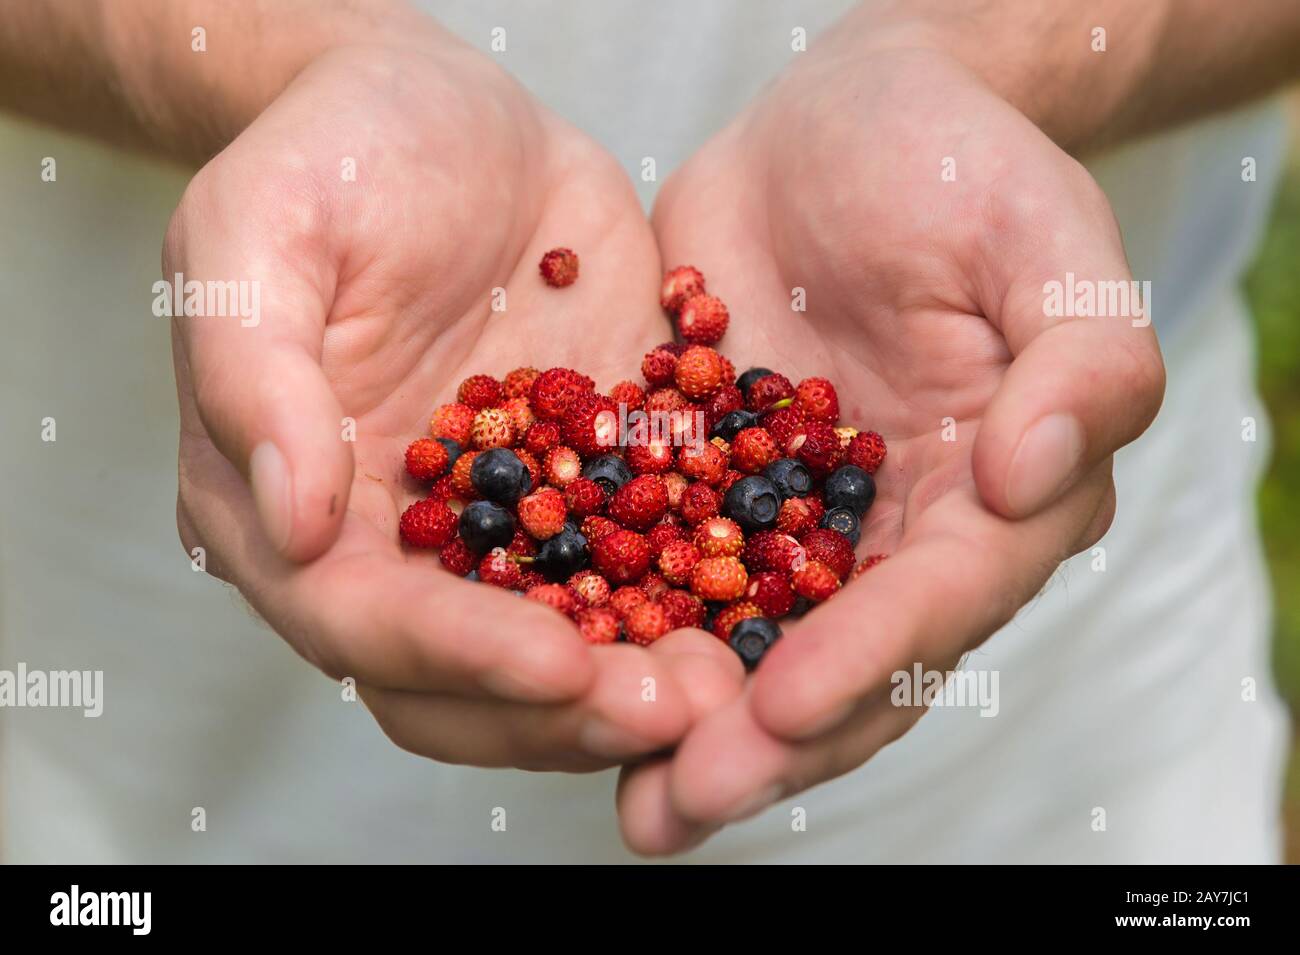 Les mains des hommes tiennent des baies de fraises et de bleuets sauvages dans les paumes de leurs mains Banque D'Images